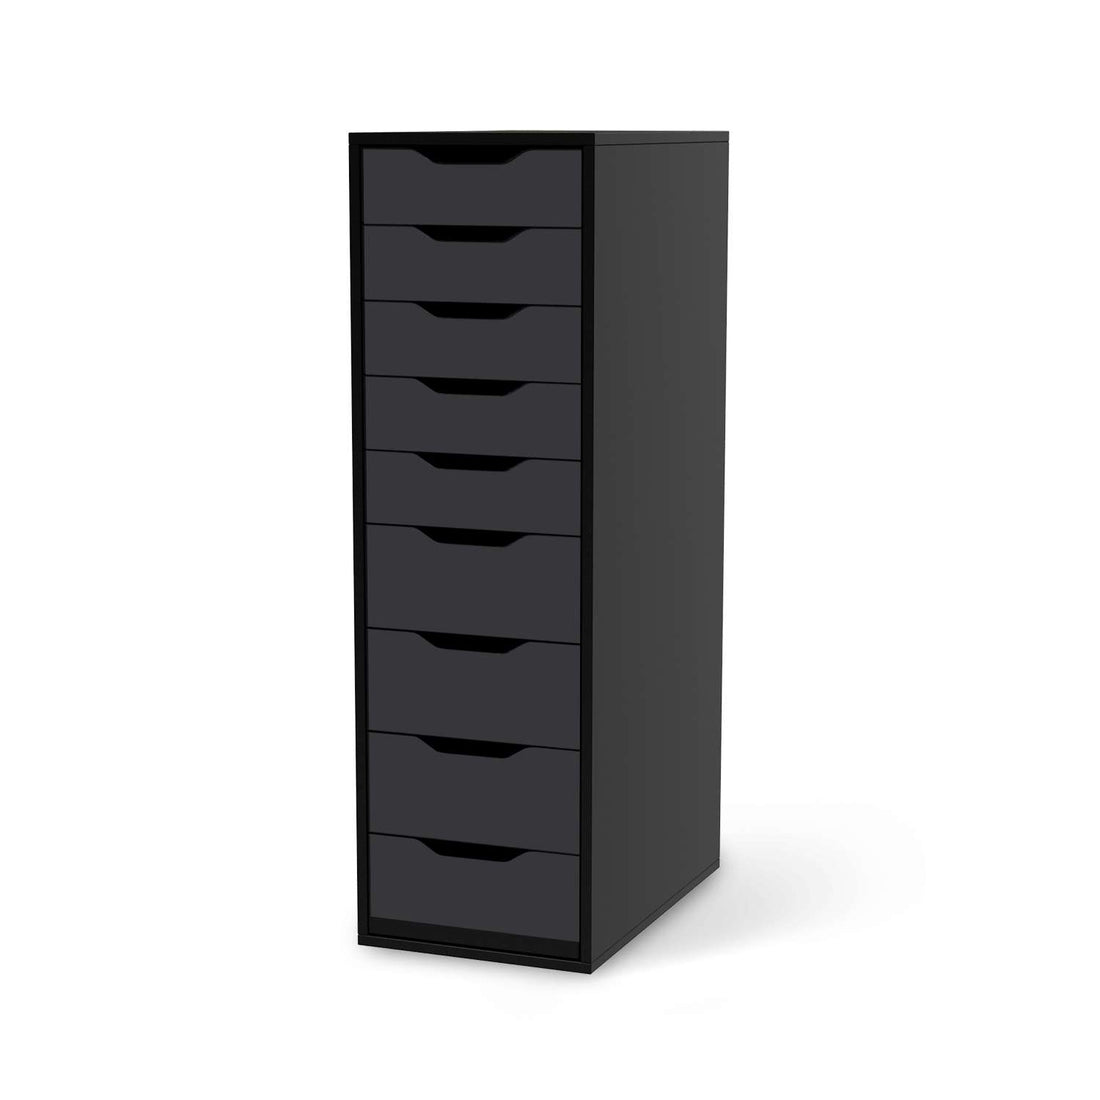 Folie für Möbel Grau Dark - IKEA Alex 9 Schubladen - schwarz